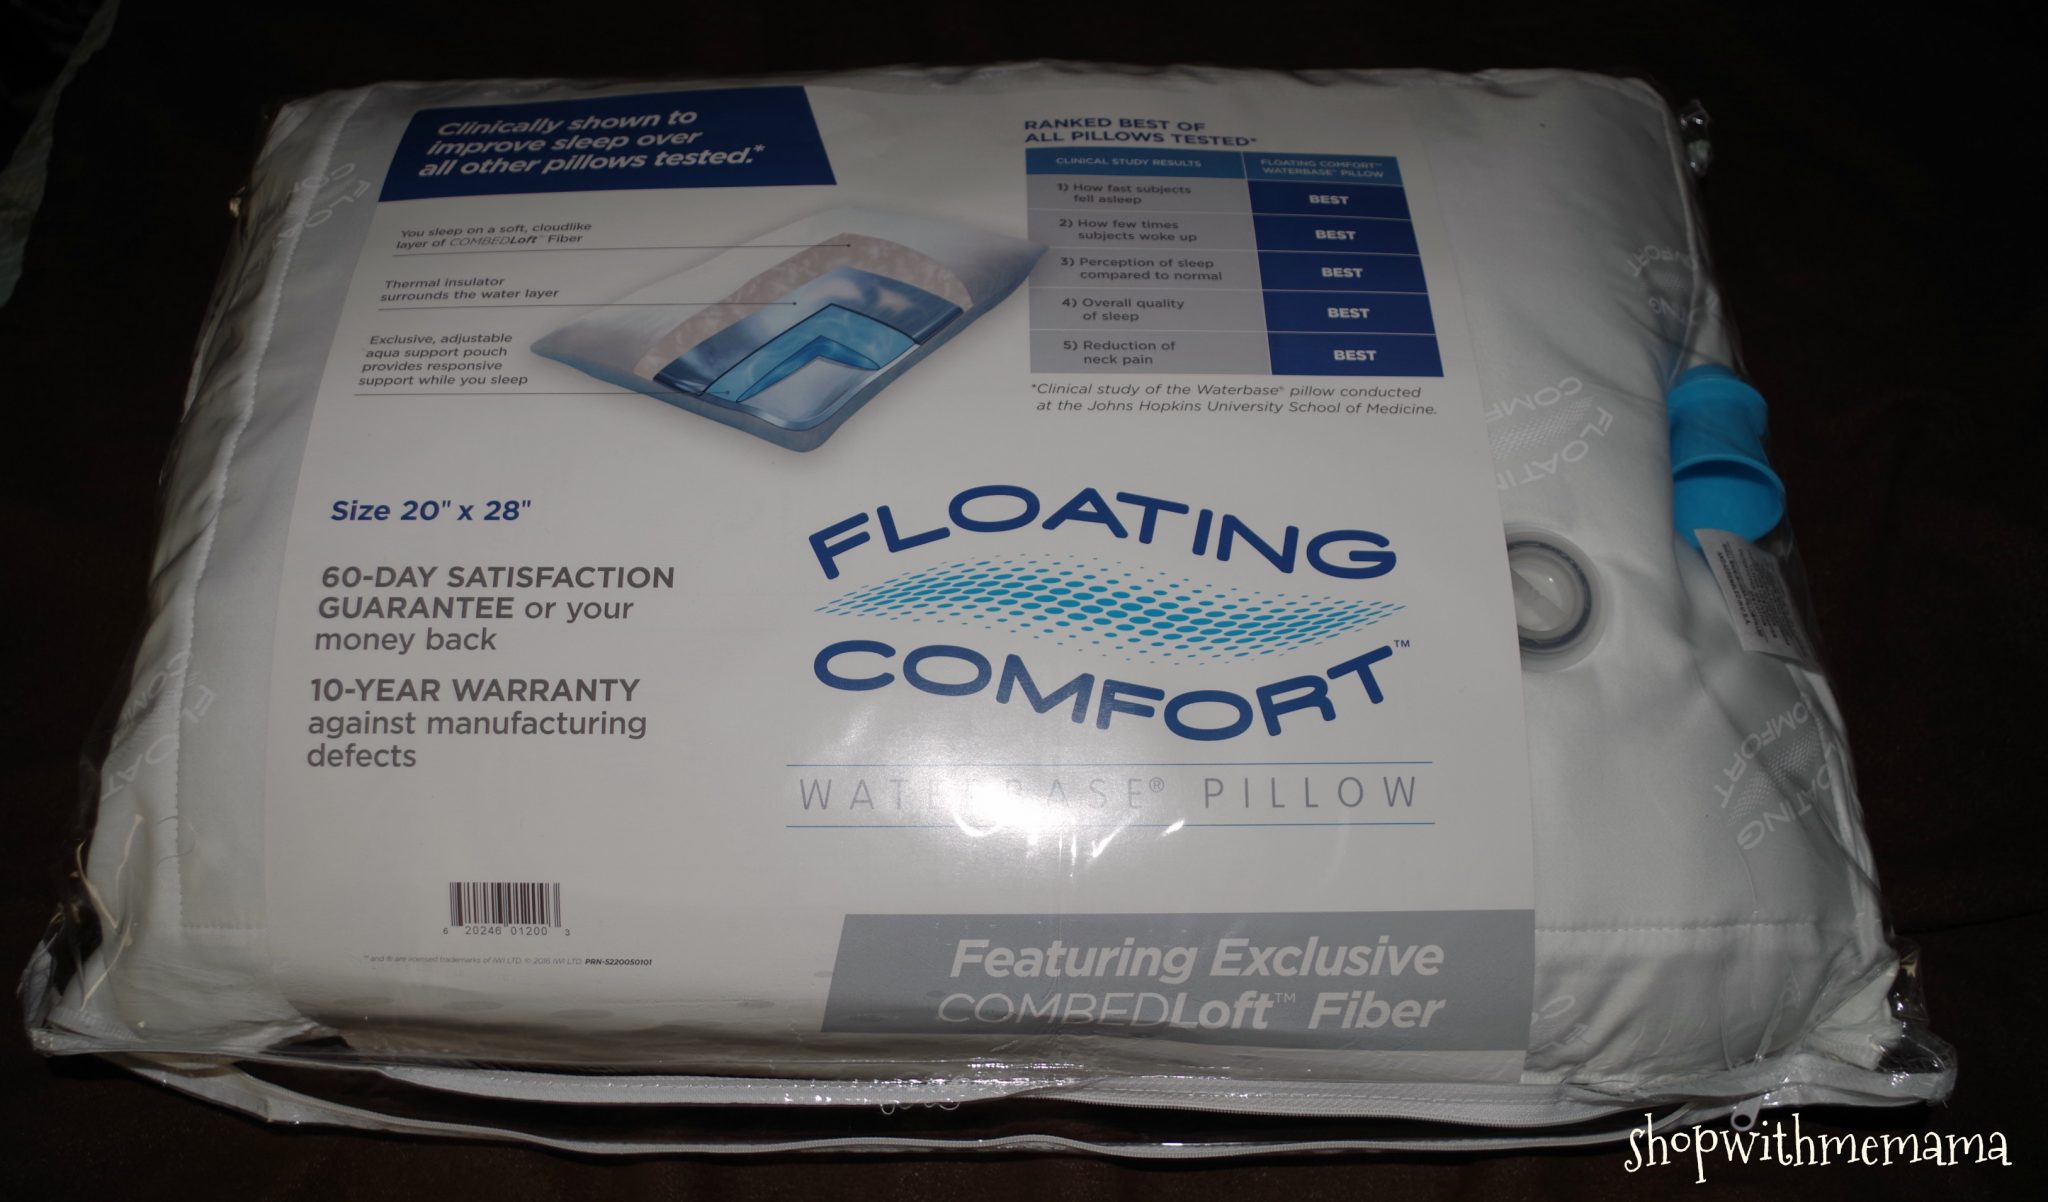 Mediflow’s Floating Comfort Pillow